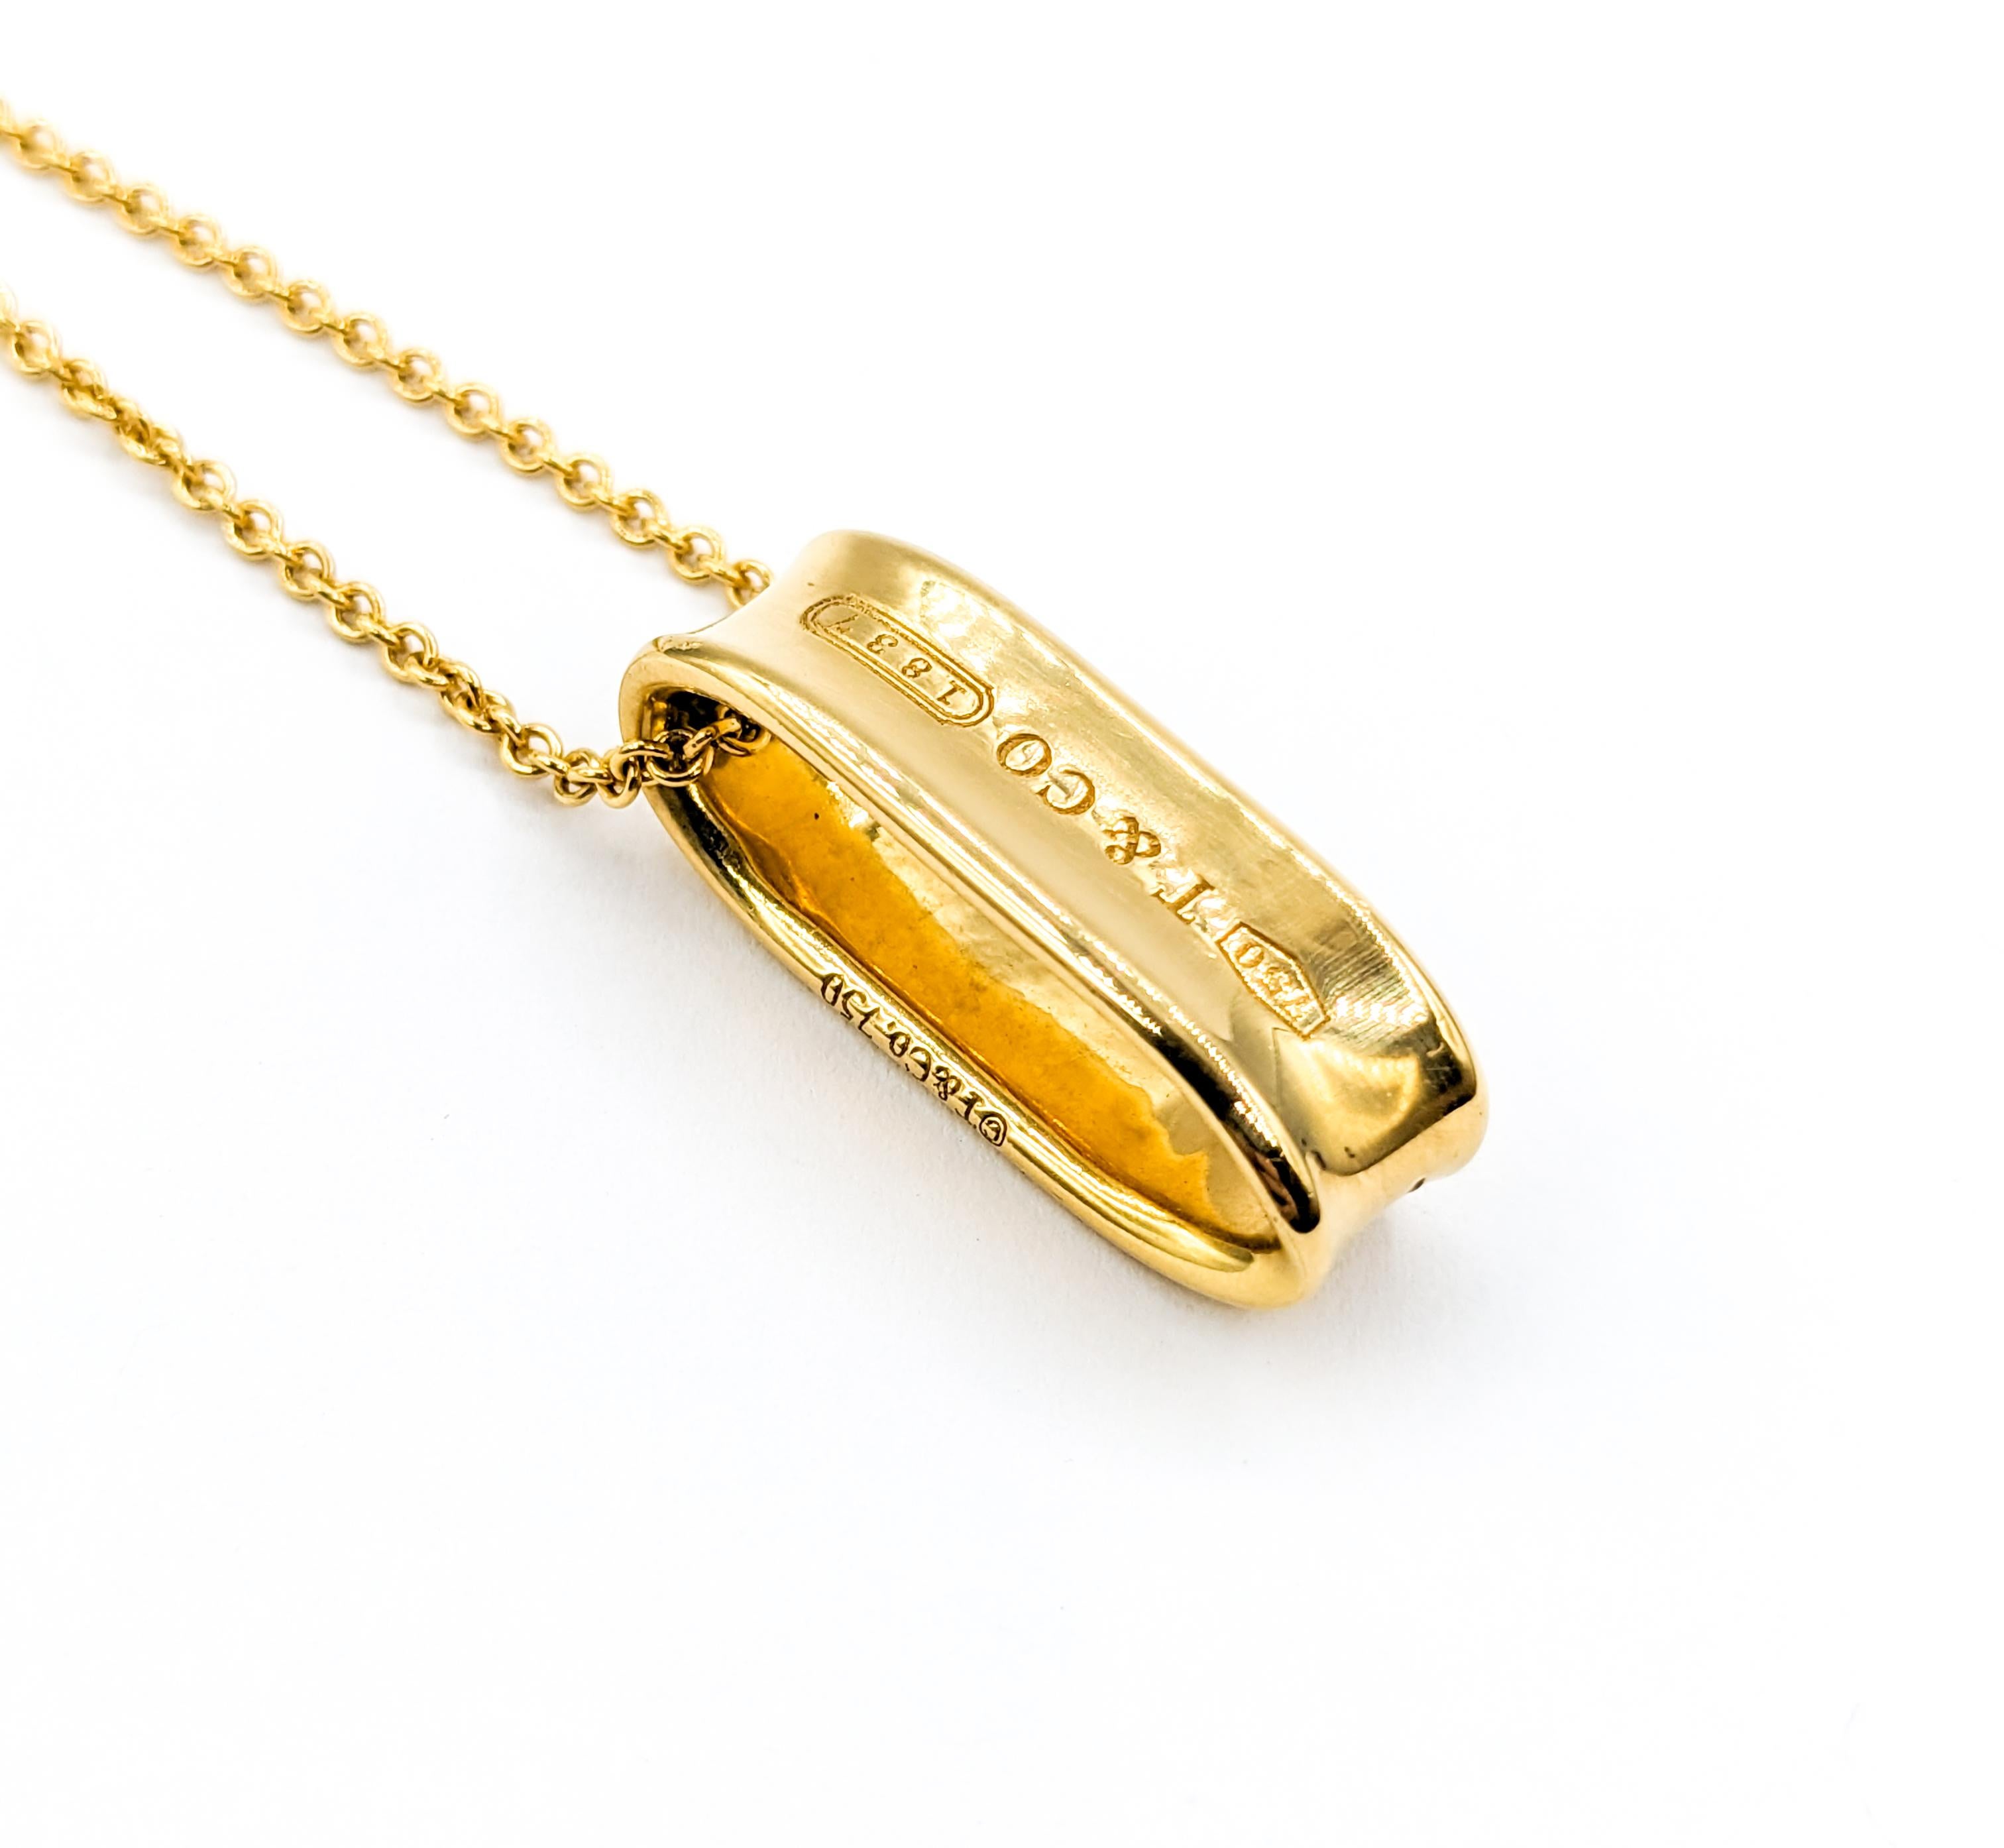  Élégant Tiffany & Co. Pendentif Looping 1837 en or jaune 18kt Pour femmes 